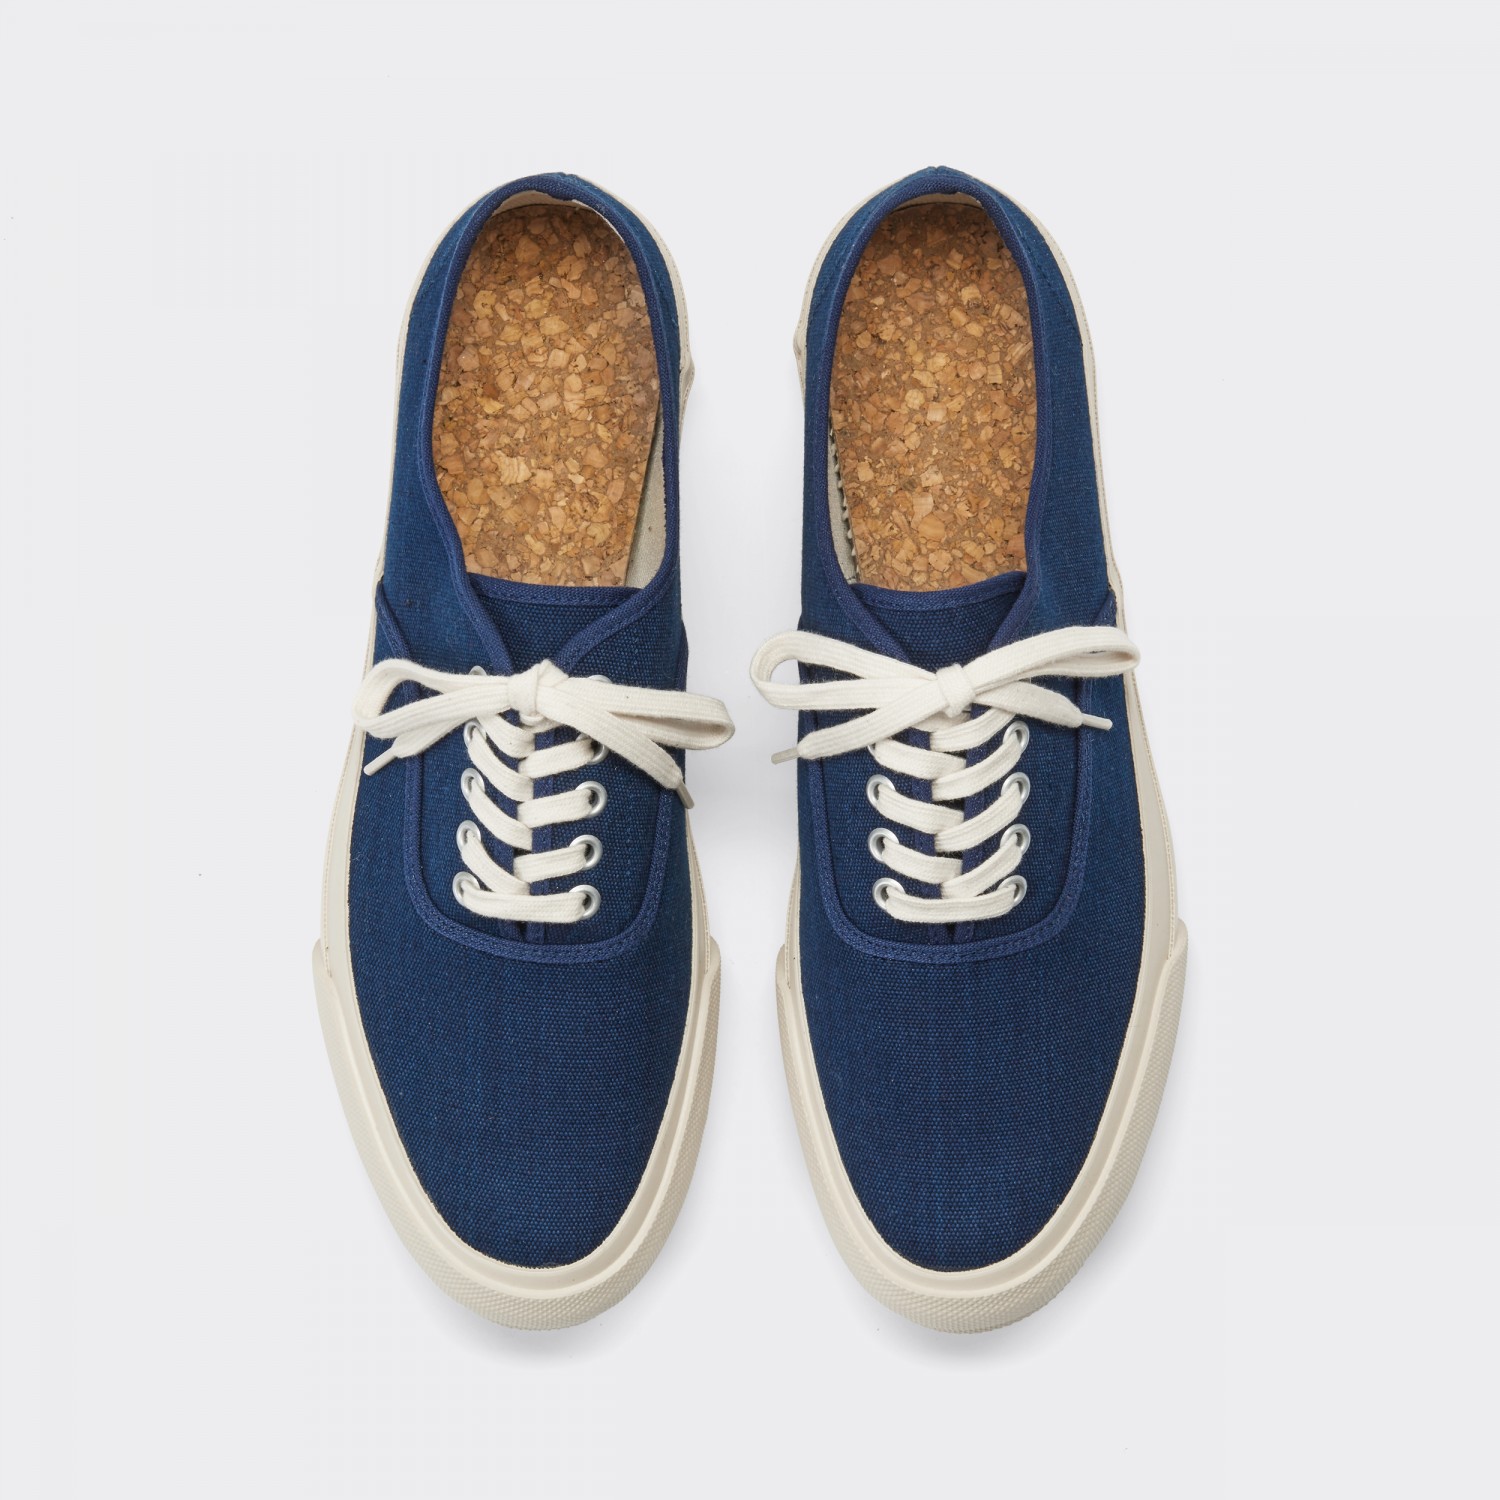 Doek : Oxford Shoe : Navy